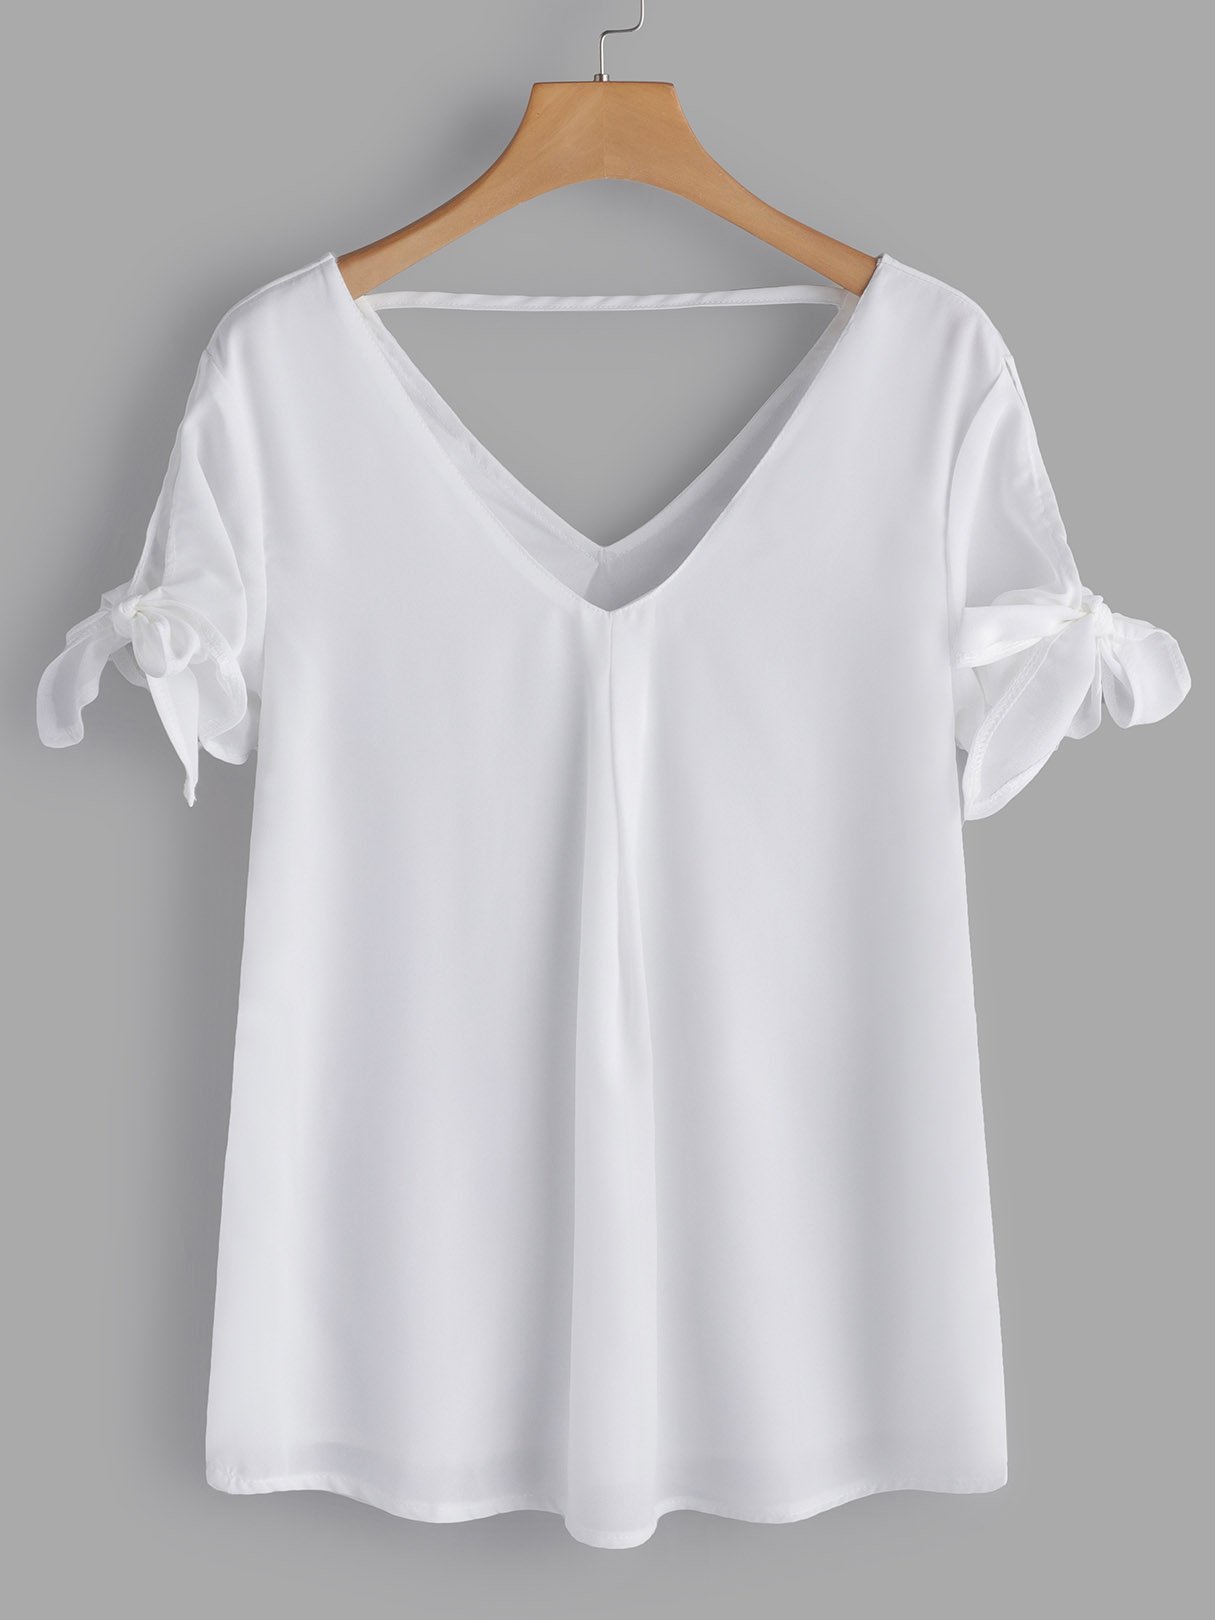 Wholesale V-Neck Backless Short Sleeve White T-Shirts